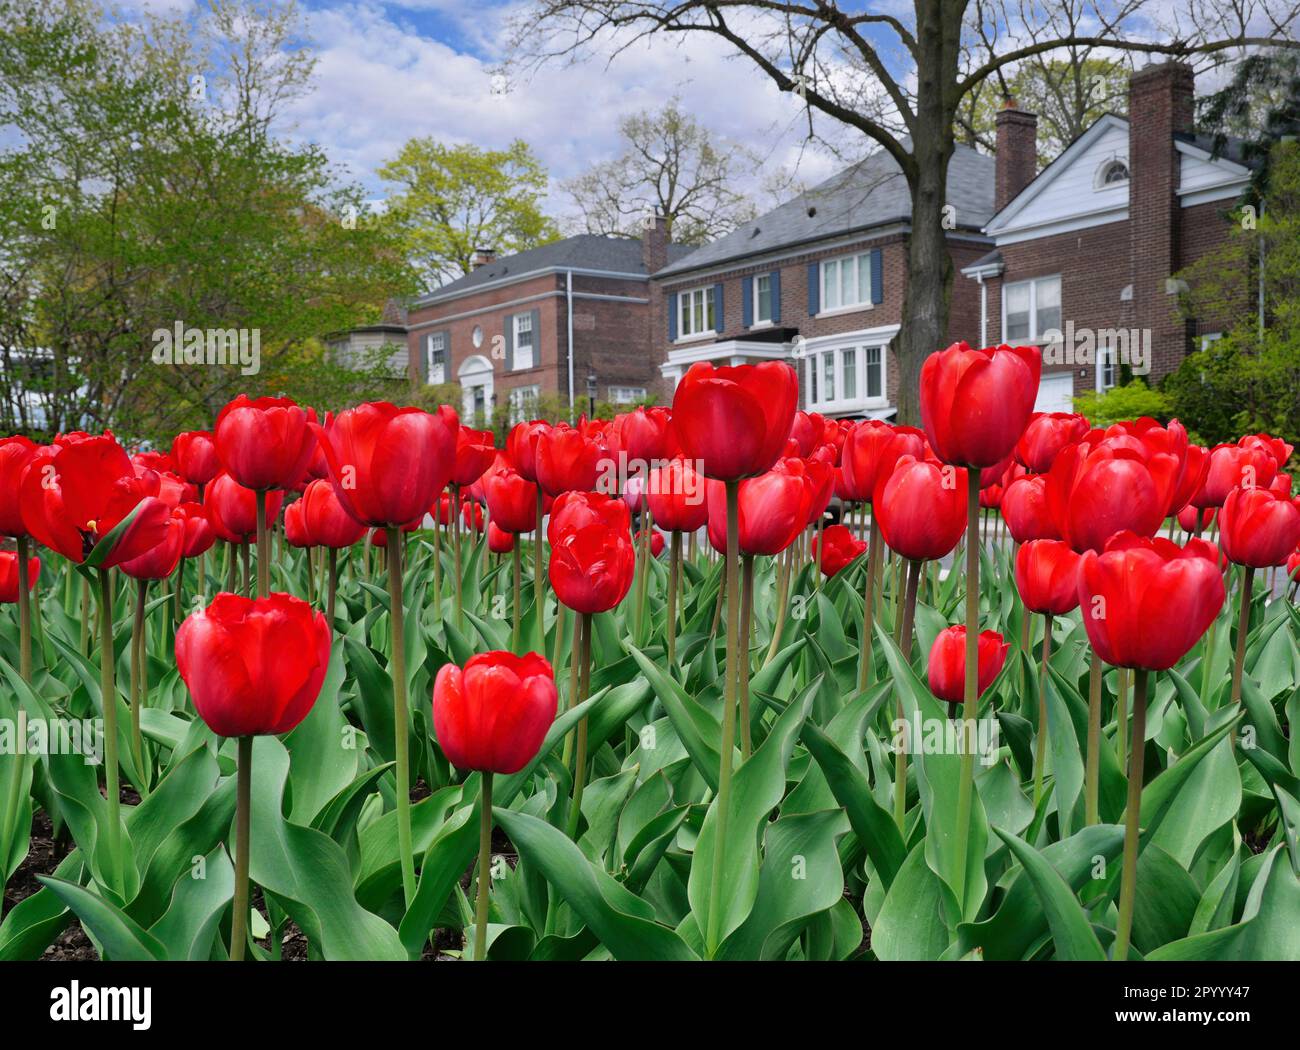 Impianto di massa di tulipani rossi profondi su una strada residenziale Foto Stock